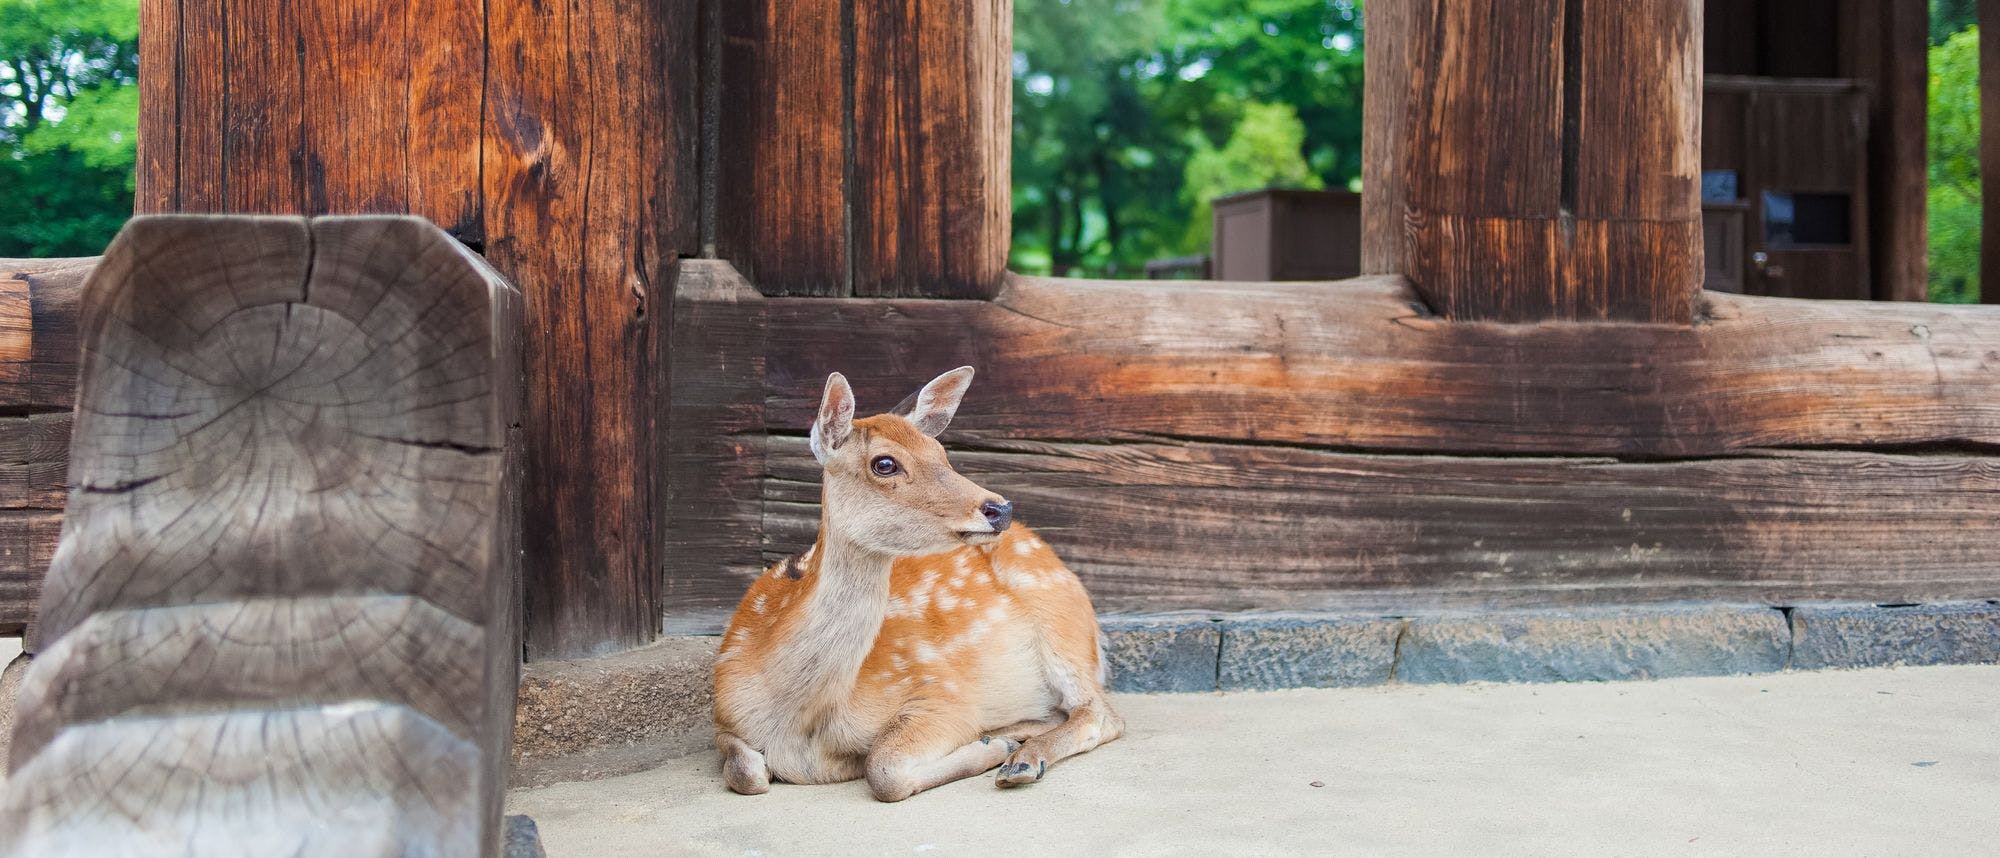 Deer in Nara, Nara Prefecture